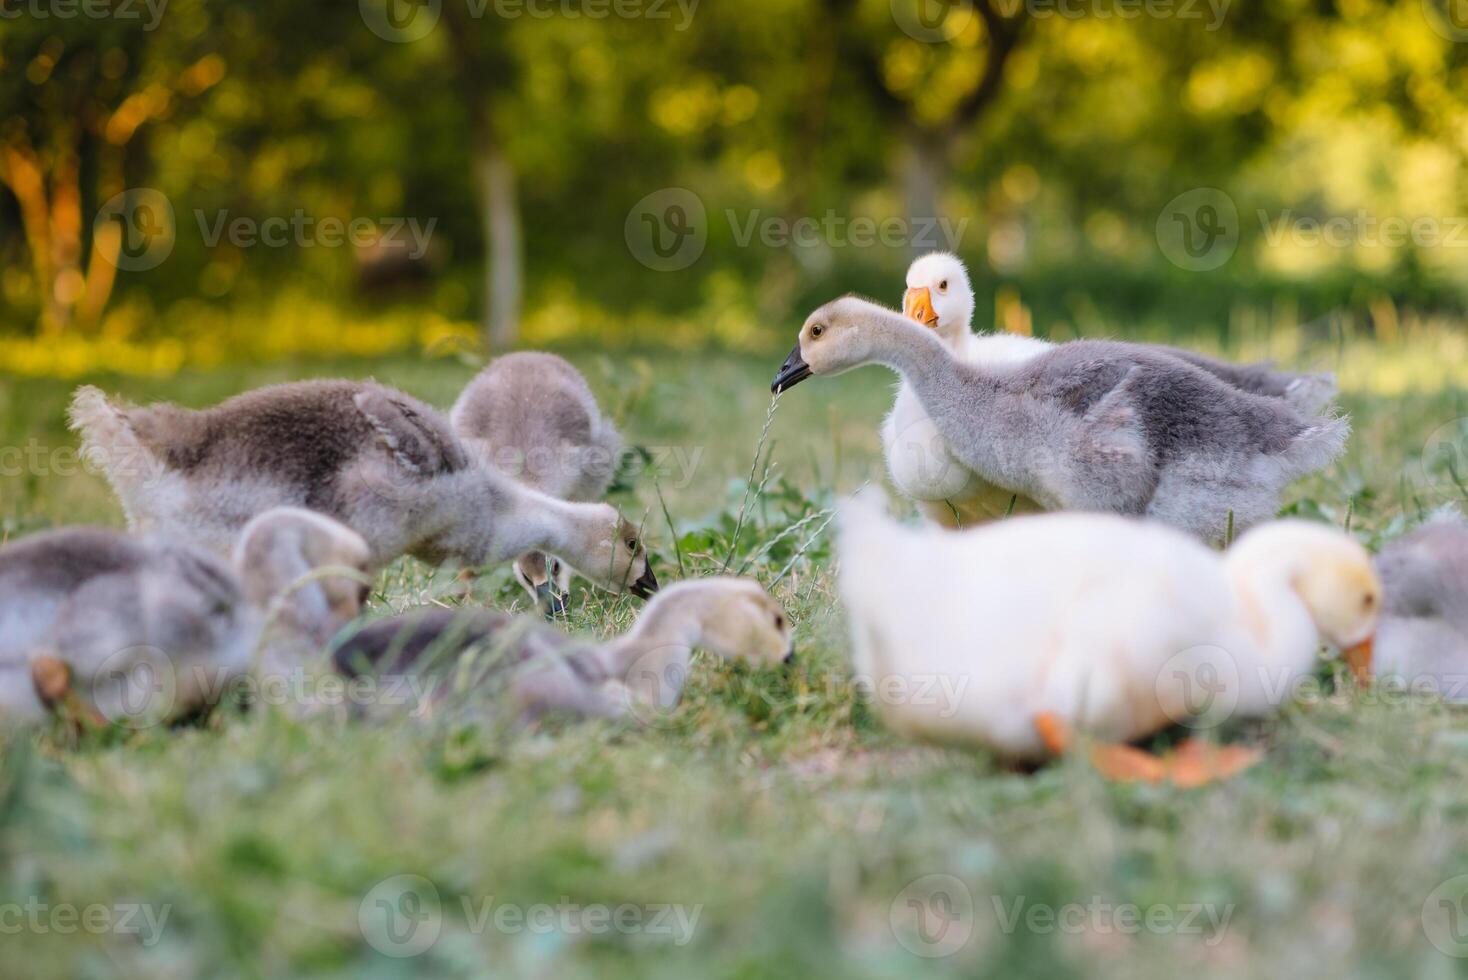 Little goslings walking in the grass between daisy flowers. photo